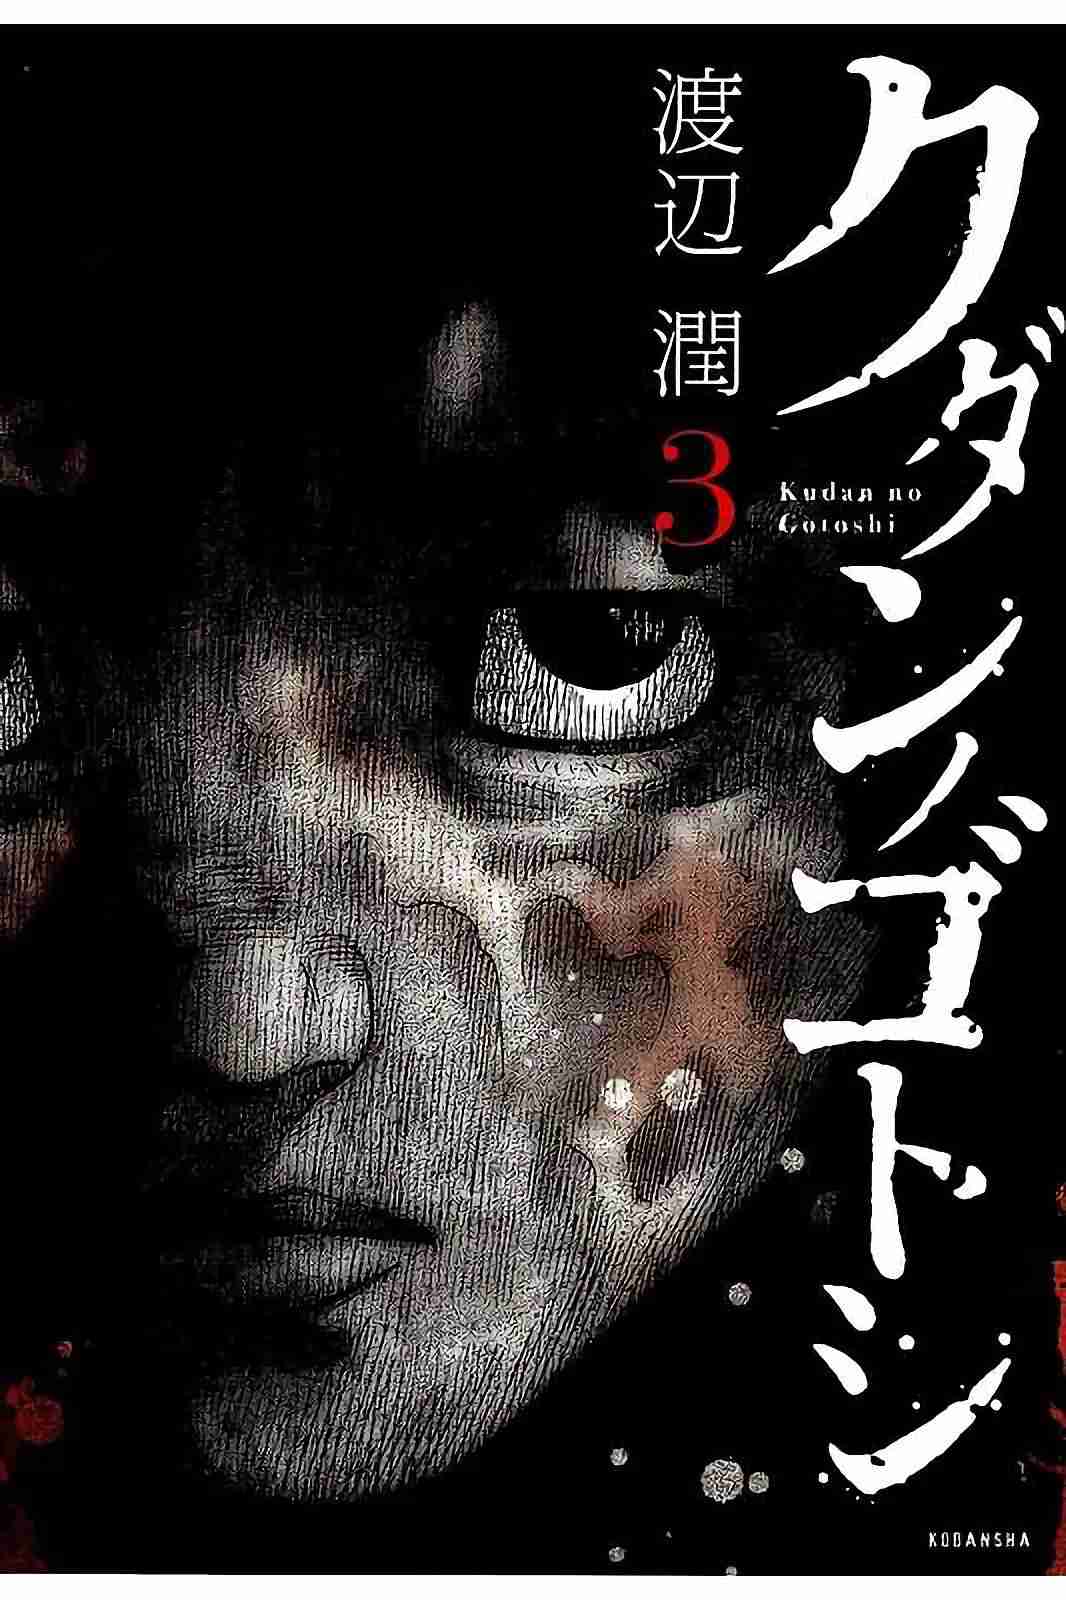 Kudan no Gotoshi Vol. 3 Ch. 18 Shinji Fujisawa < Part 4 >